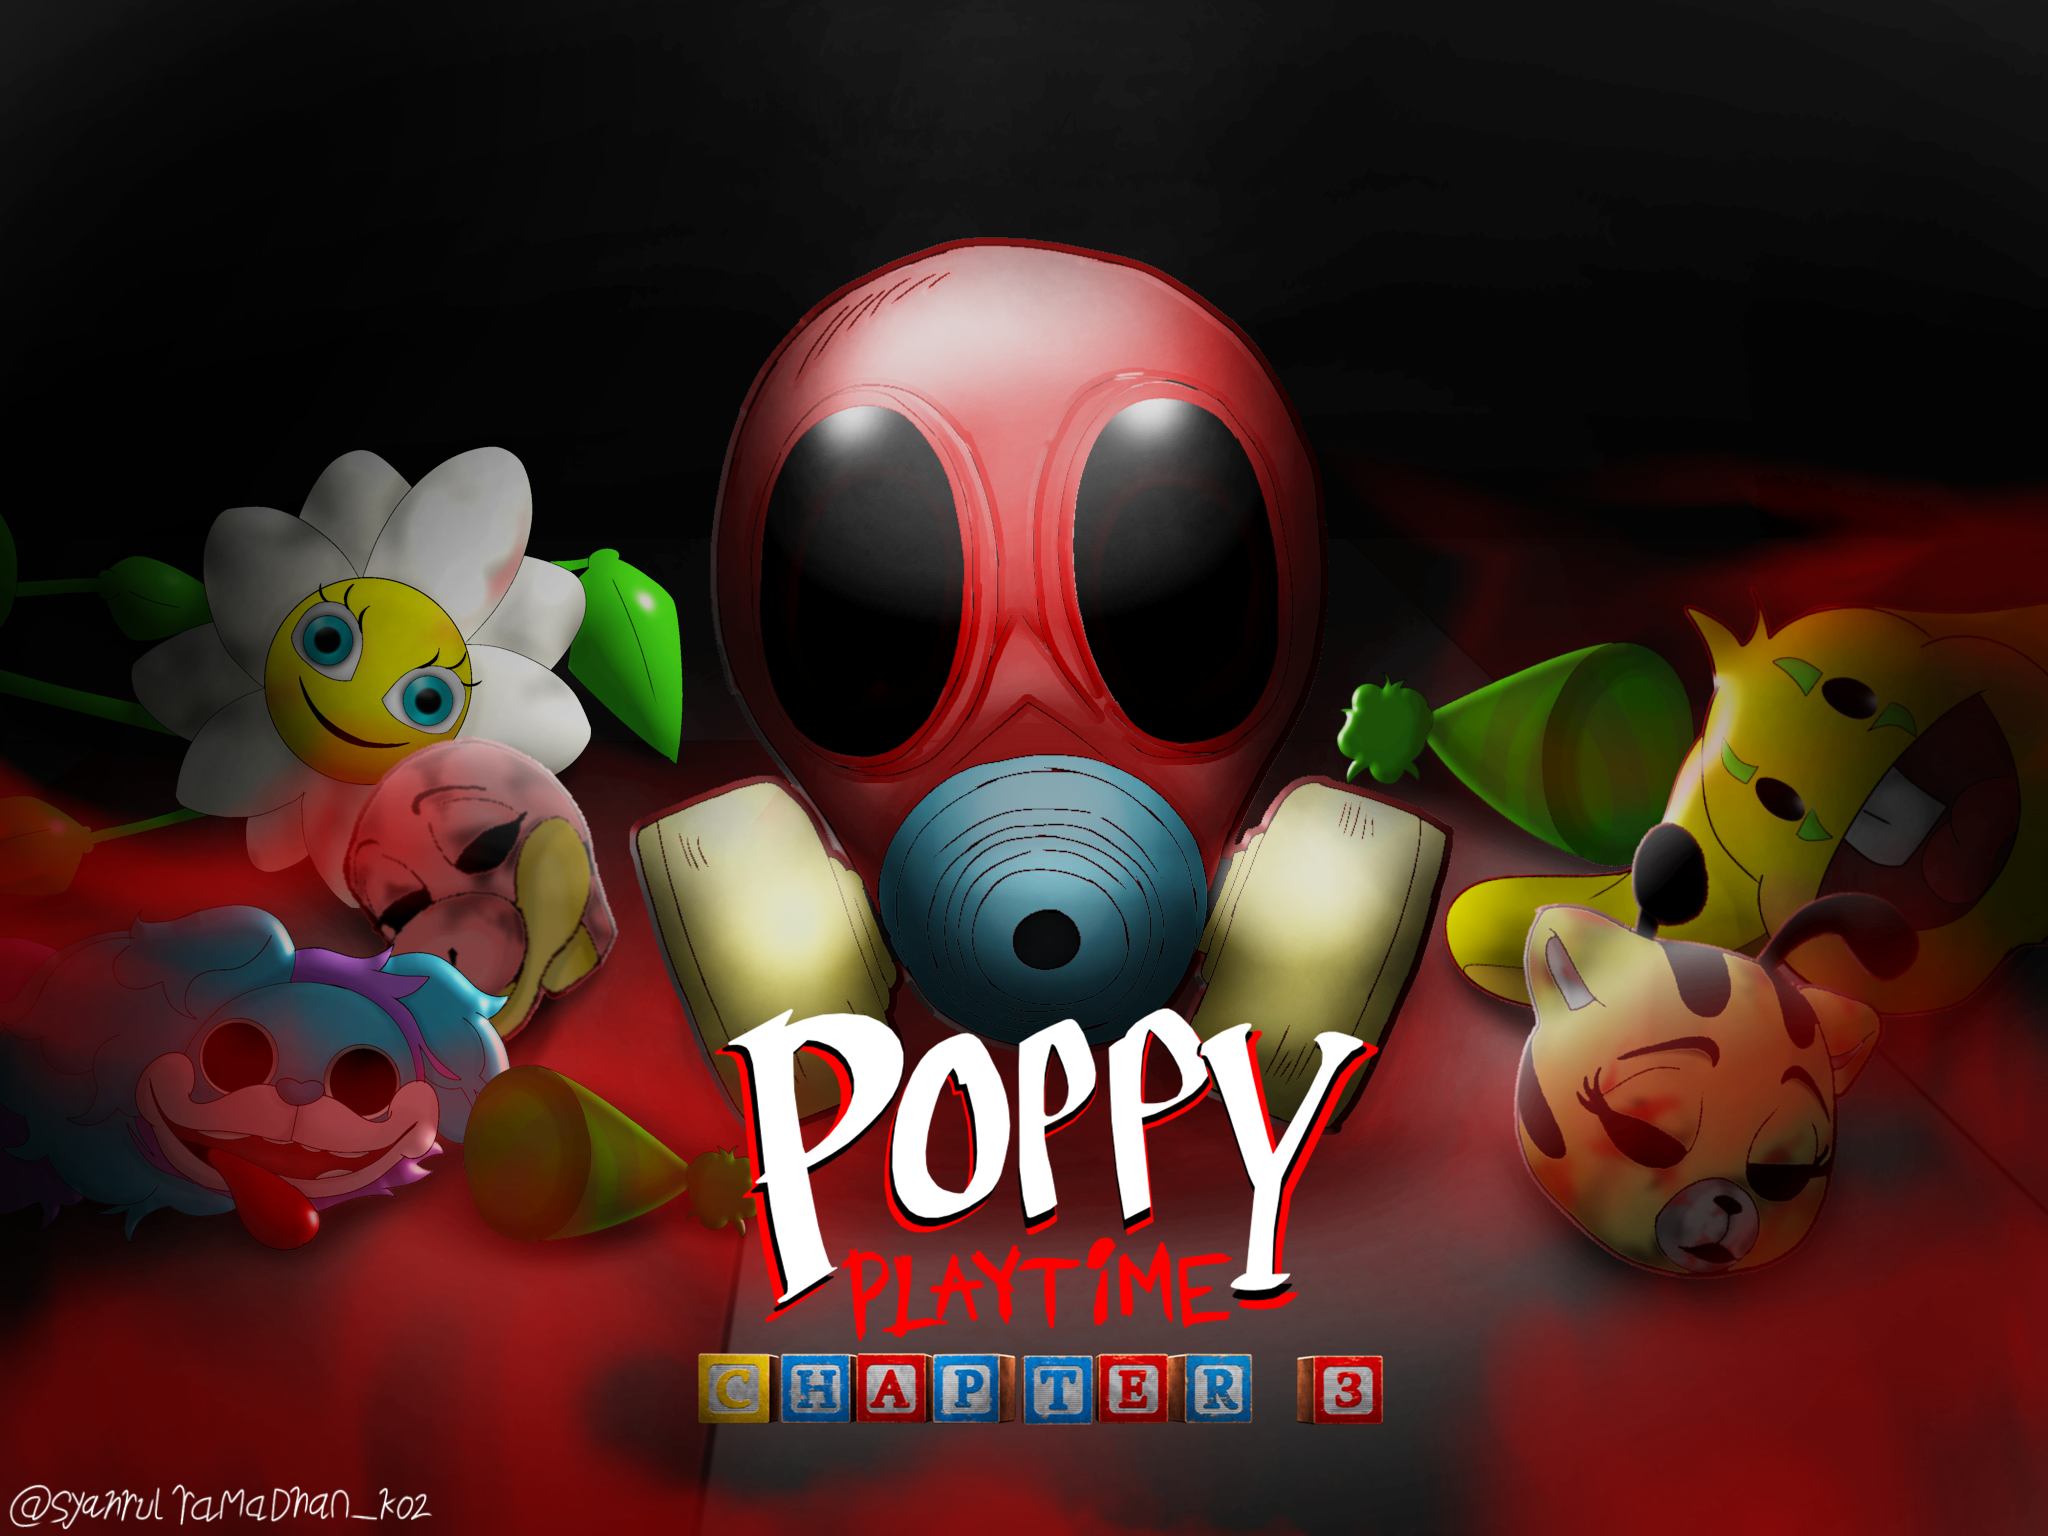 Poppy playtime chapter 3 teaser poster #2 by johnmc0007 on DeviantArt